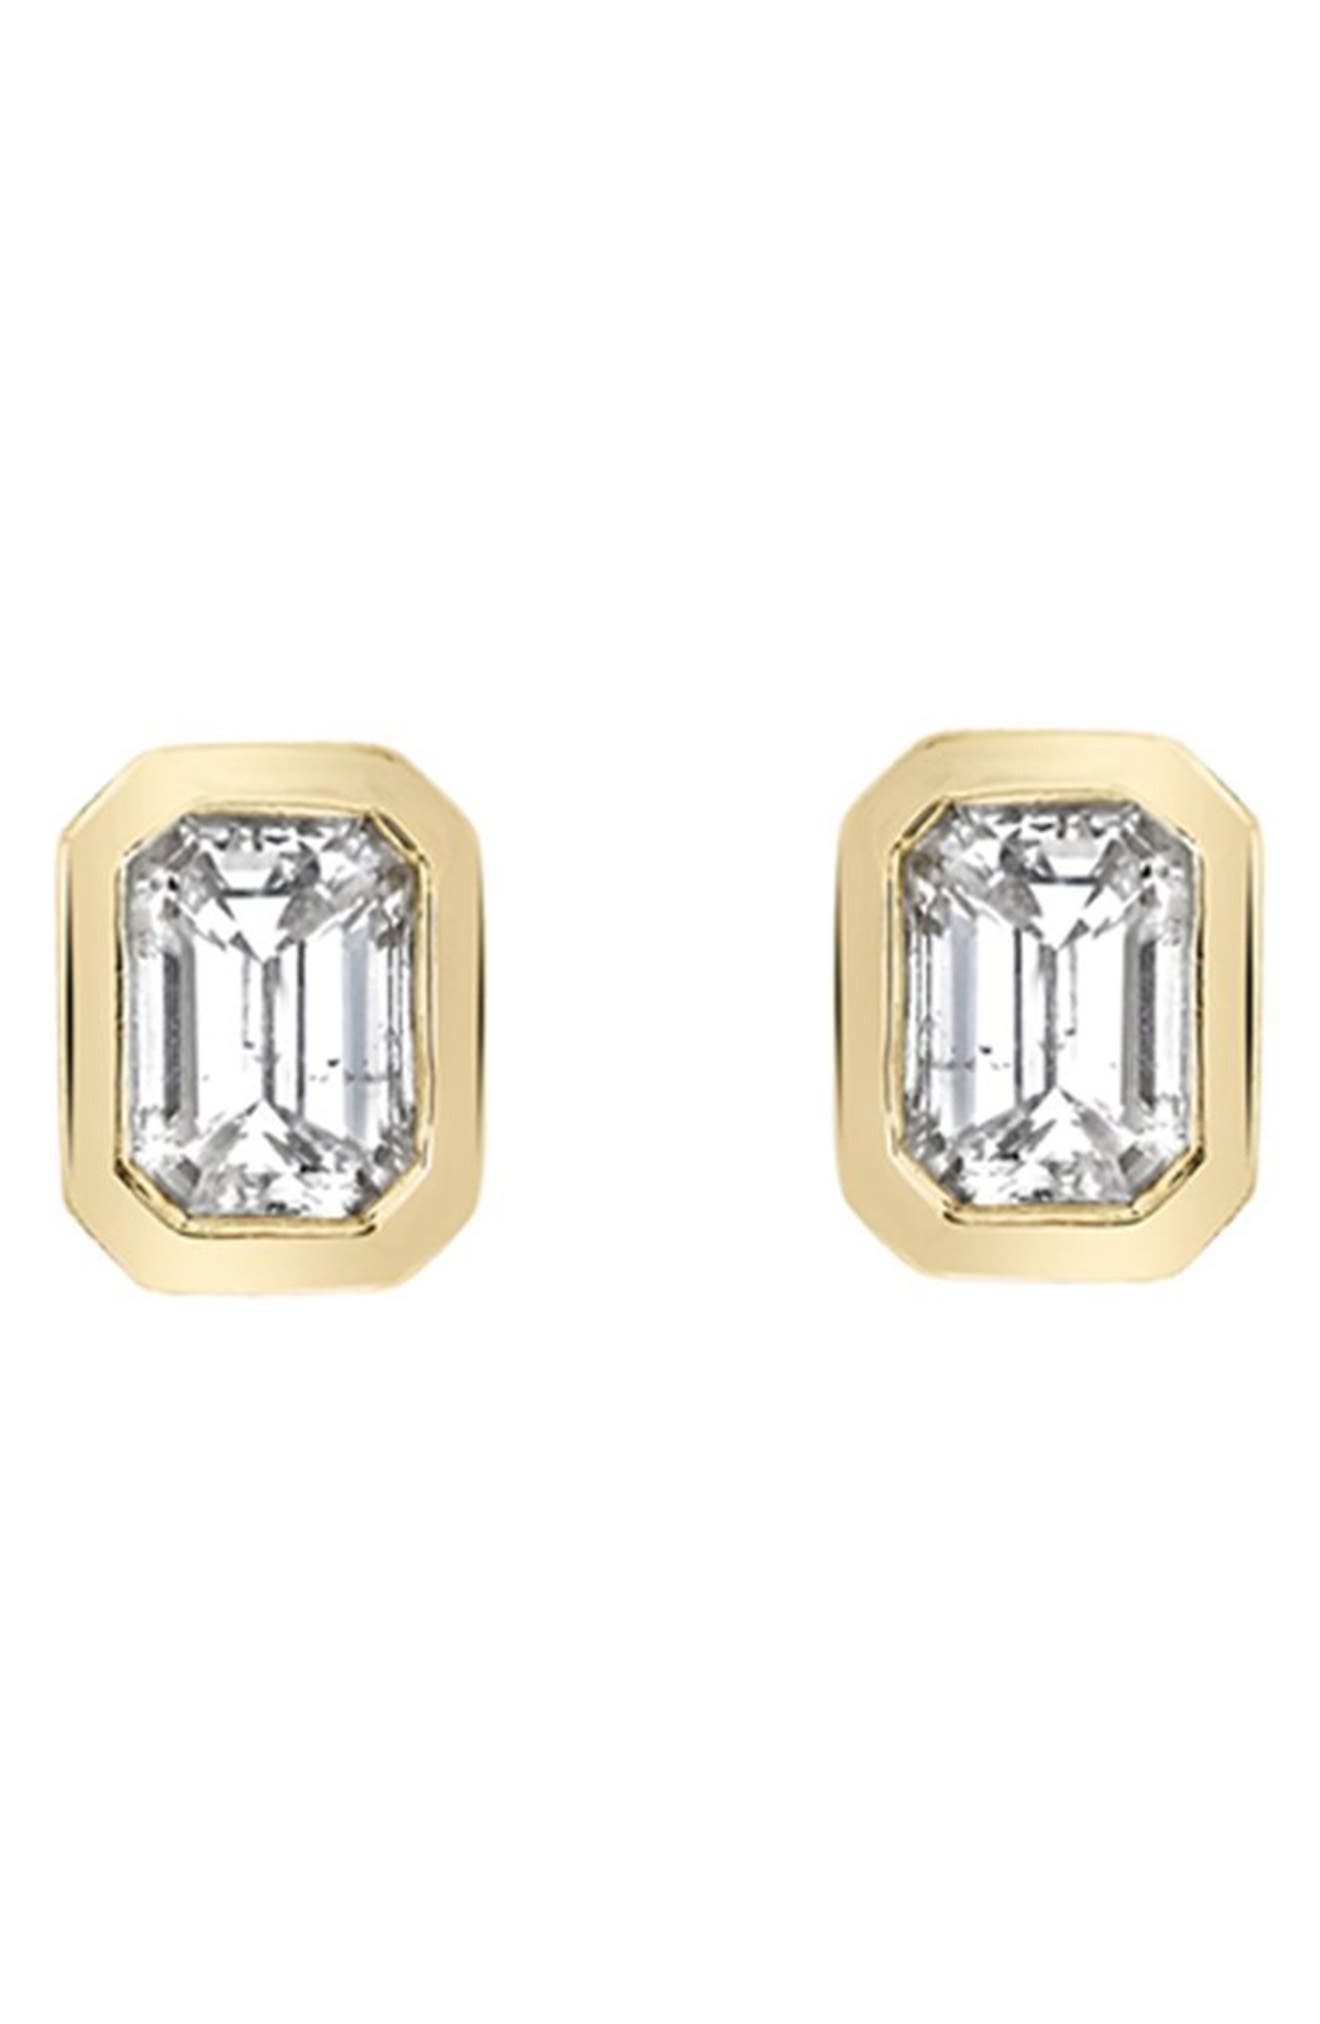 Ron Hami 14k Gold Emerald Cut Diamond Stud Earrings In Yellow Gold ...